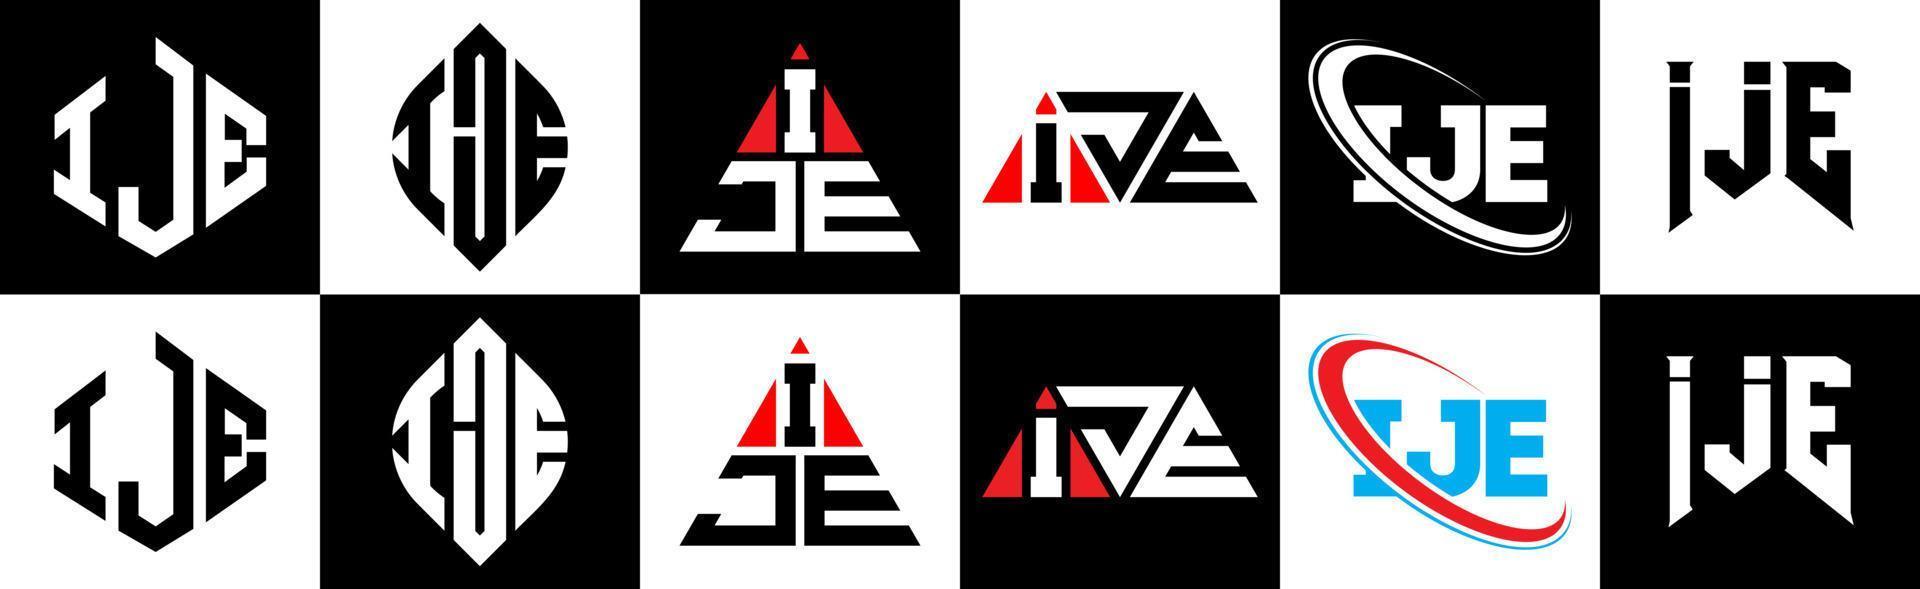 ije lettera logo design nel sei stile. ije poligono, cerchio, triangolo, esagono, piatto e semplice stile con nero e bianca colore variazione lettera logo impostato nel uno tavola da disegno. ije minimalista e classico logo vettore